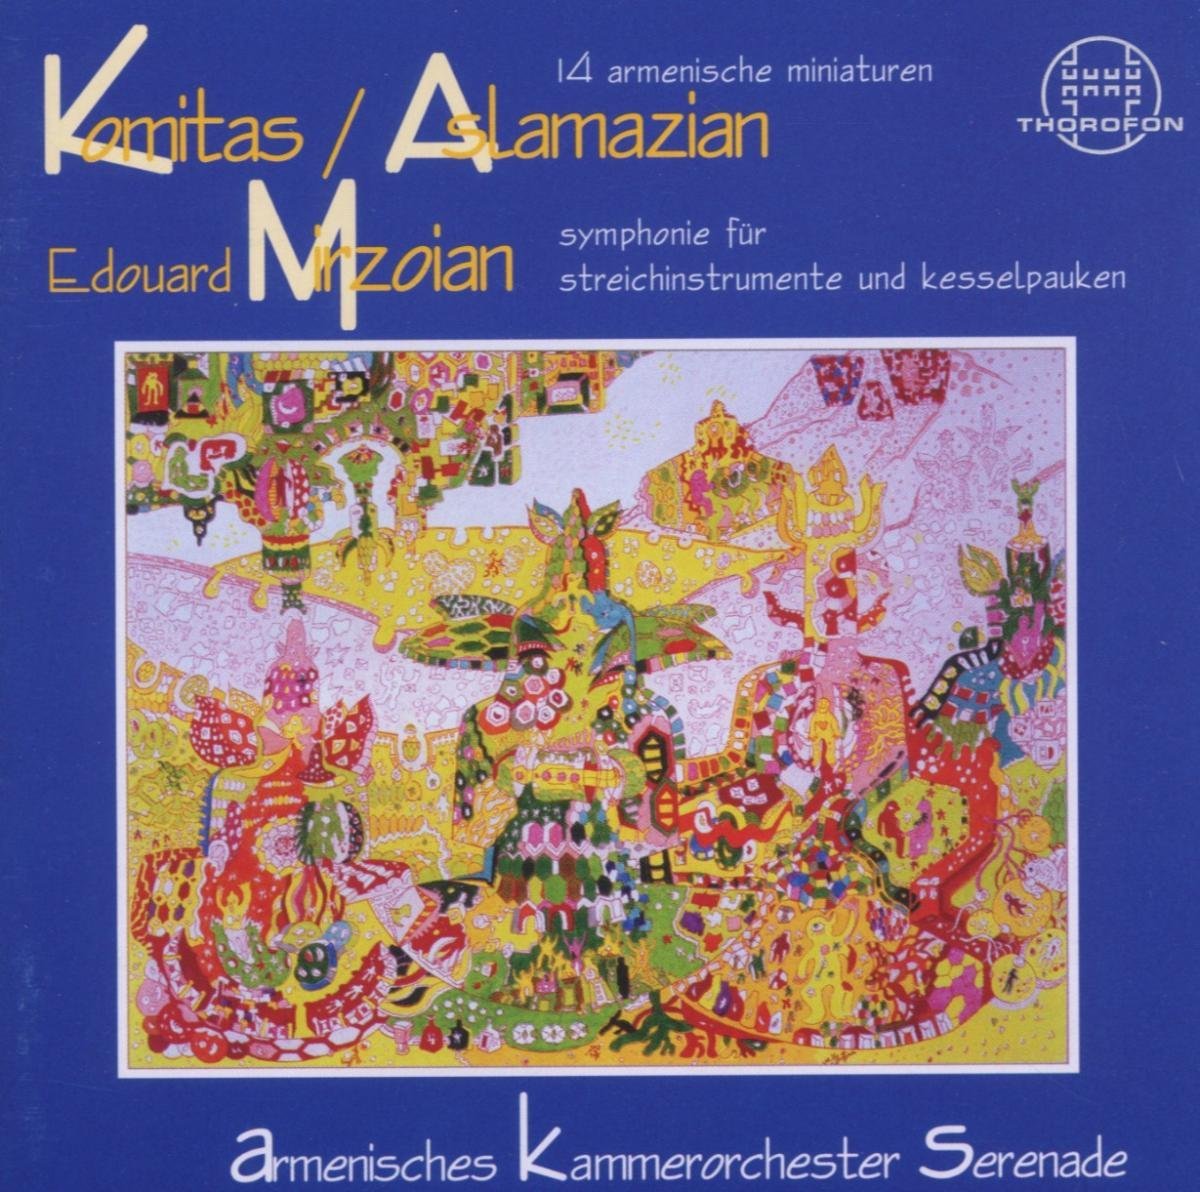 Audio Cd Komitas/Aslamazian/Mirzoi - 14 Armenische Miniaturen NUOVO SIGILLATO, EDIZIONE DEL 19/10/1998 SUBITO DISPONIBILE